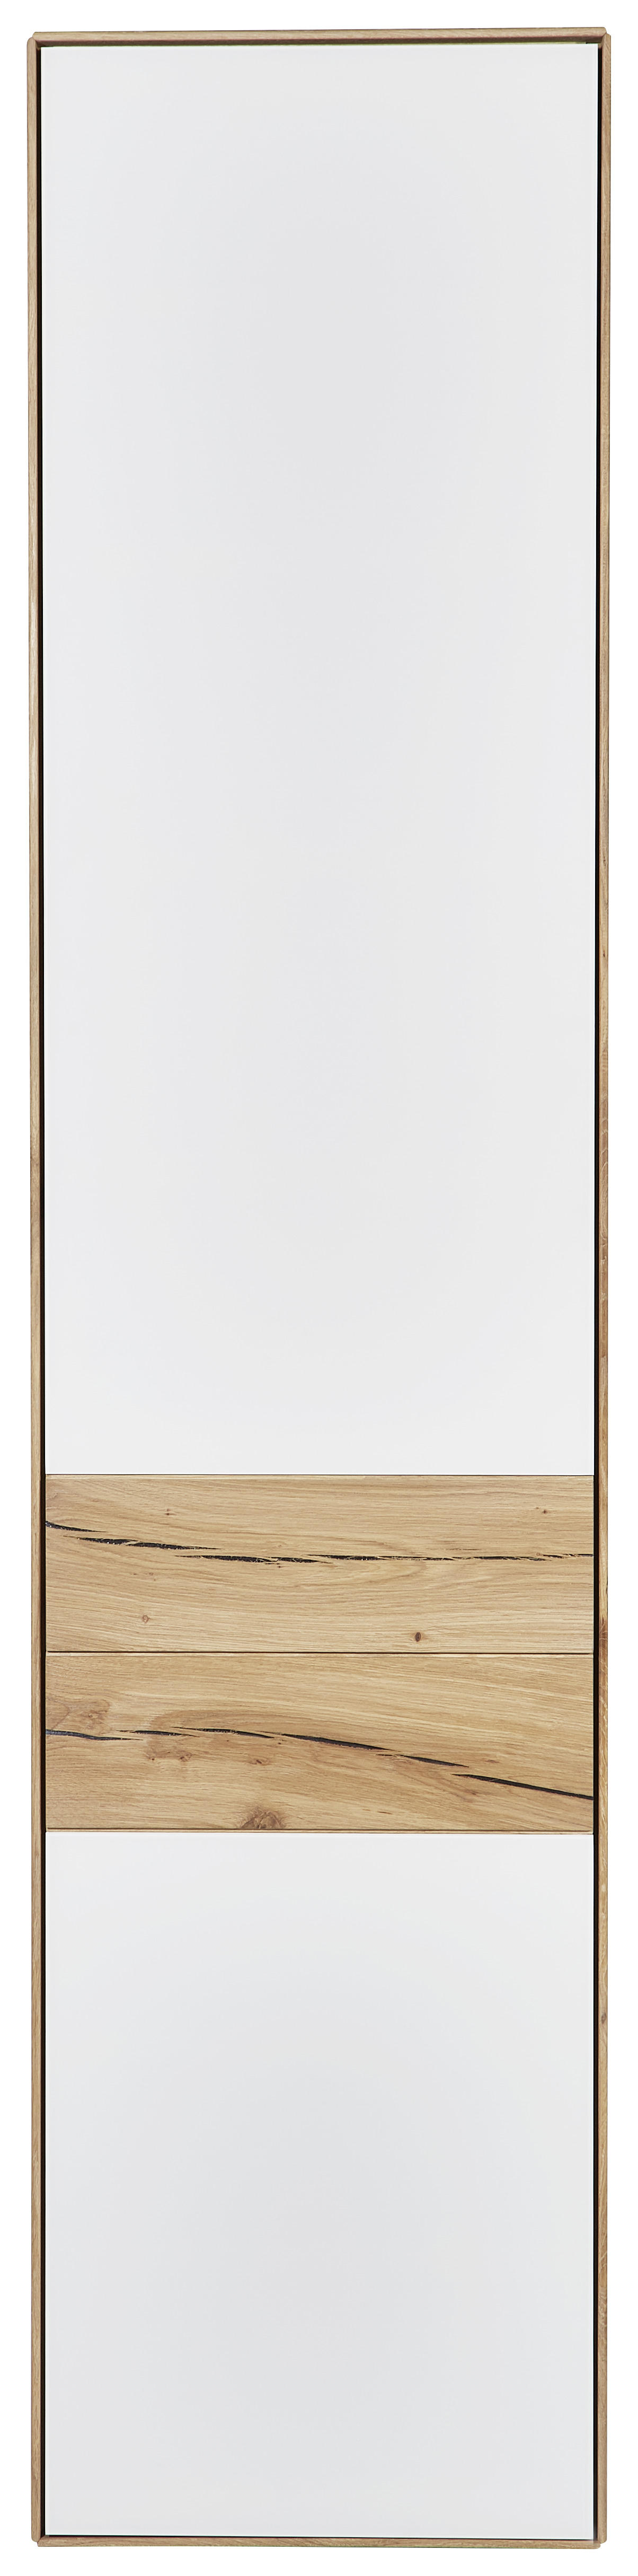 SCHRANK 47/205,5/40 cm  - Eichefarben/Weiß, Design, Glas/Holz (47/205,5/40cm) - Valnatura